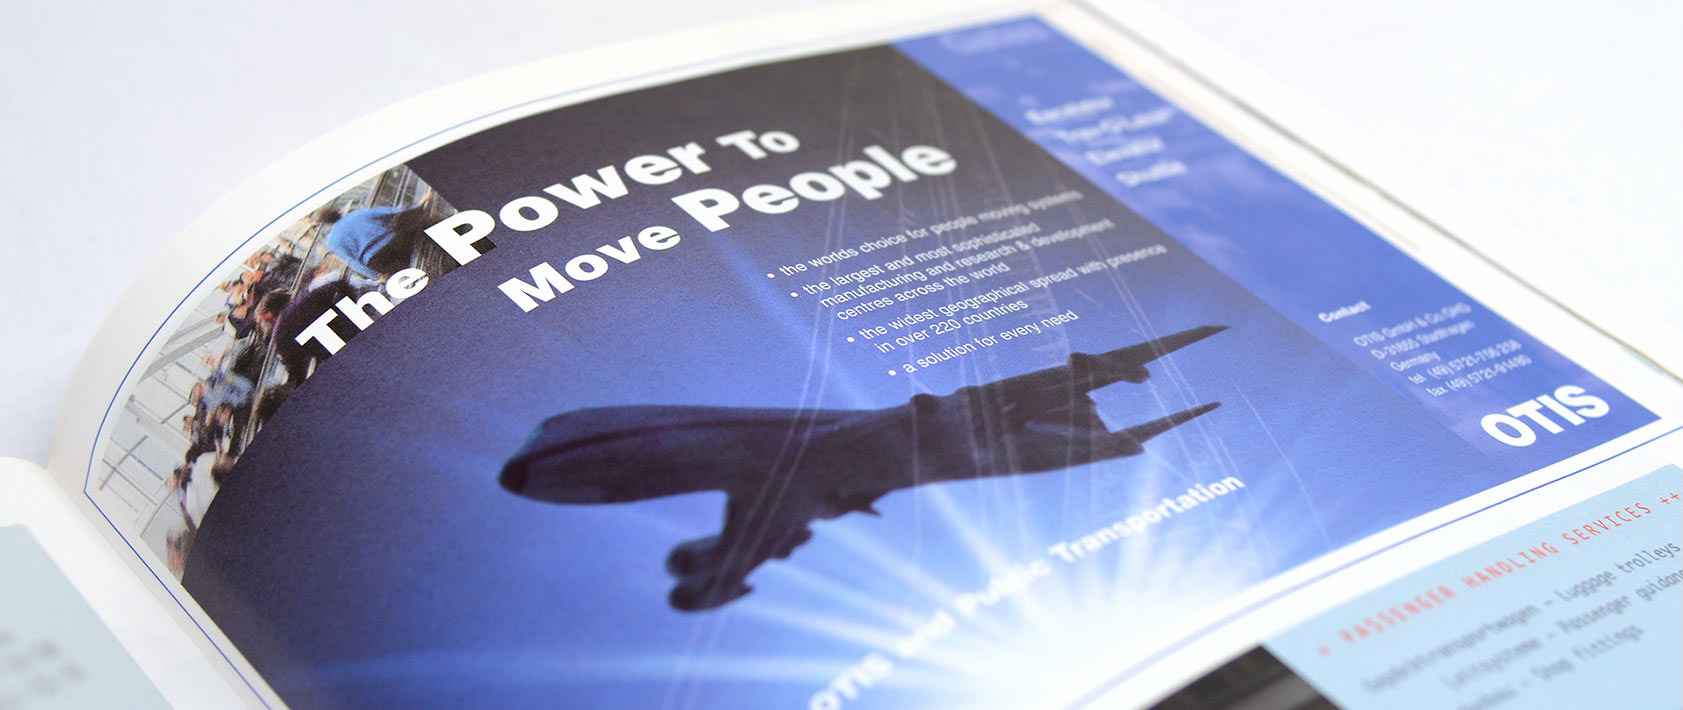 Anzeige in Zeitschrift mi Flugzeug as Hauptmotiv